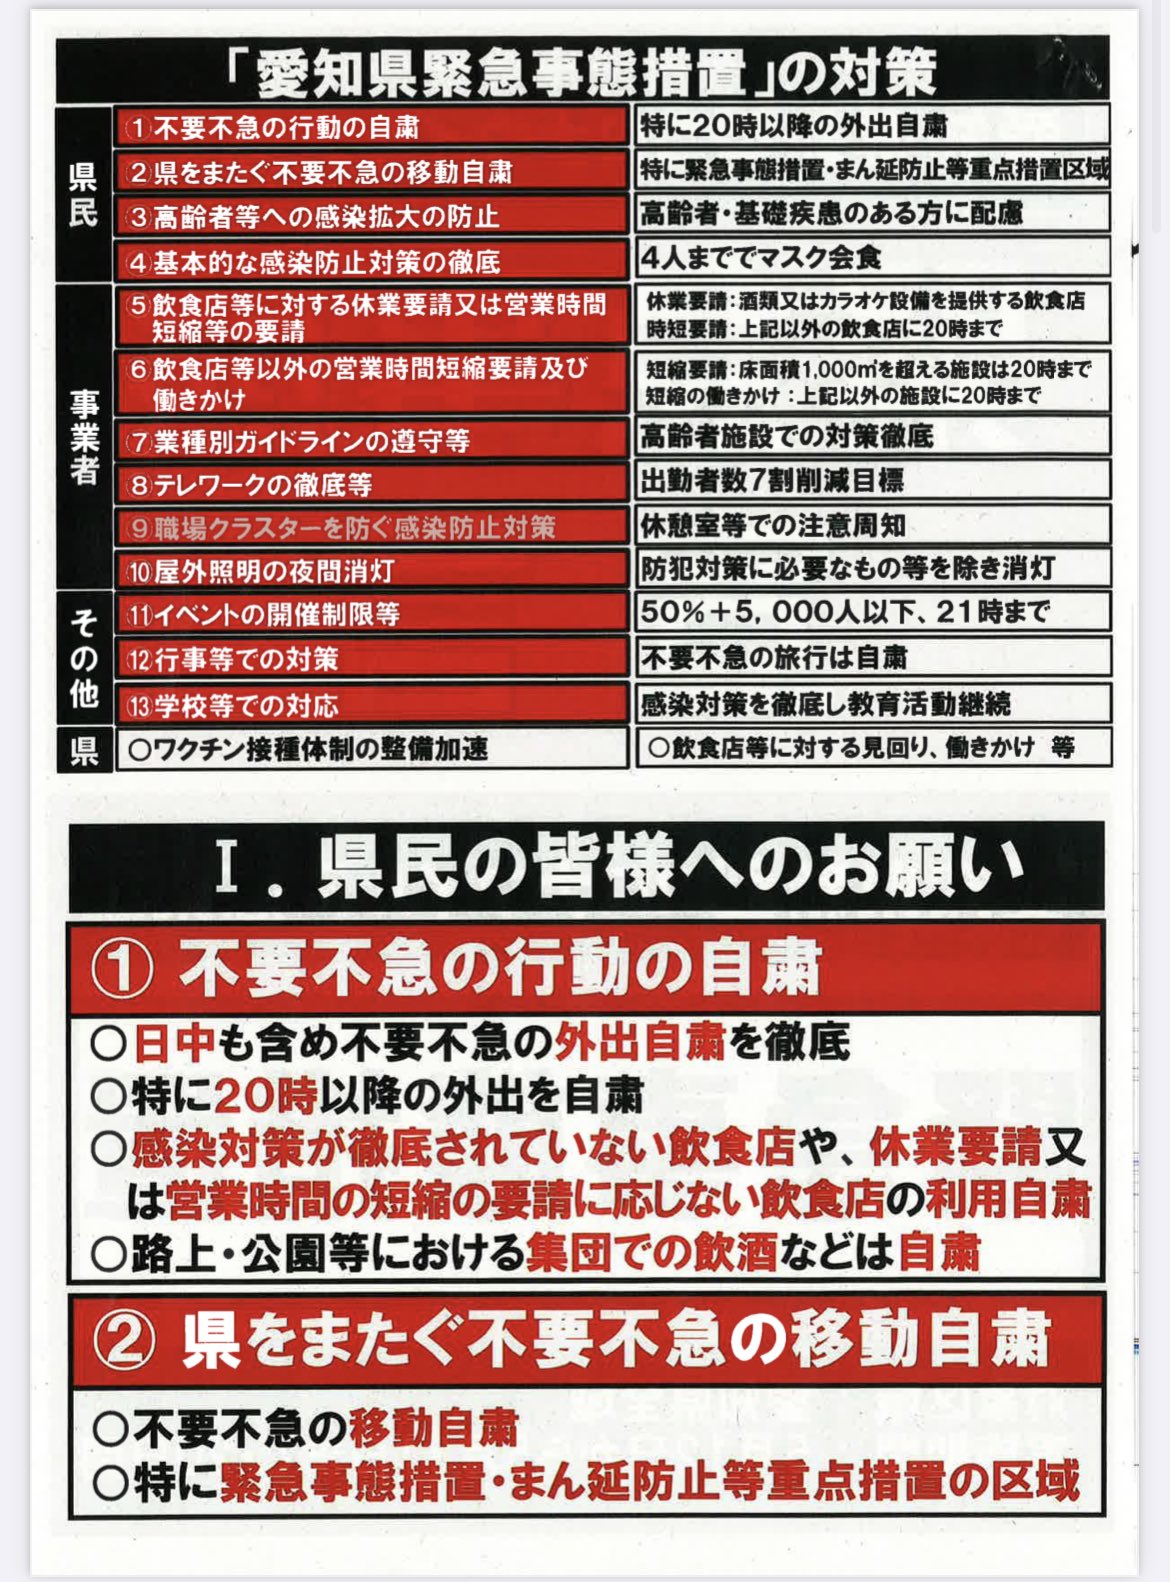 緊急事態宣言に関する愛知県からのメッセージ